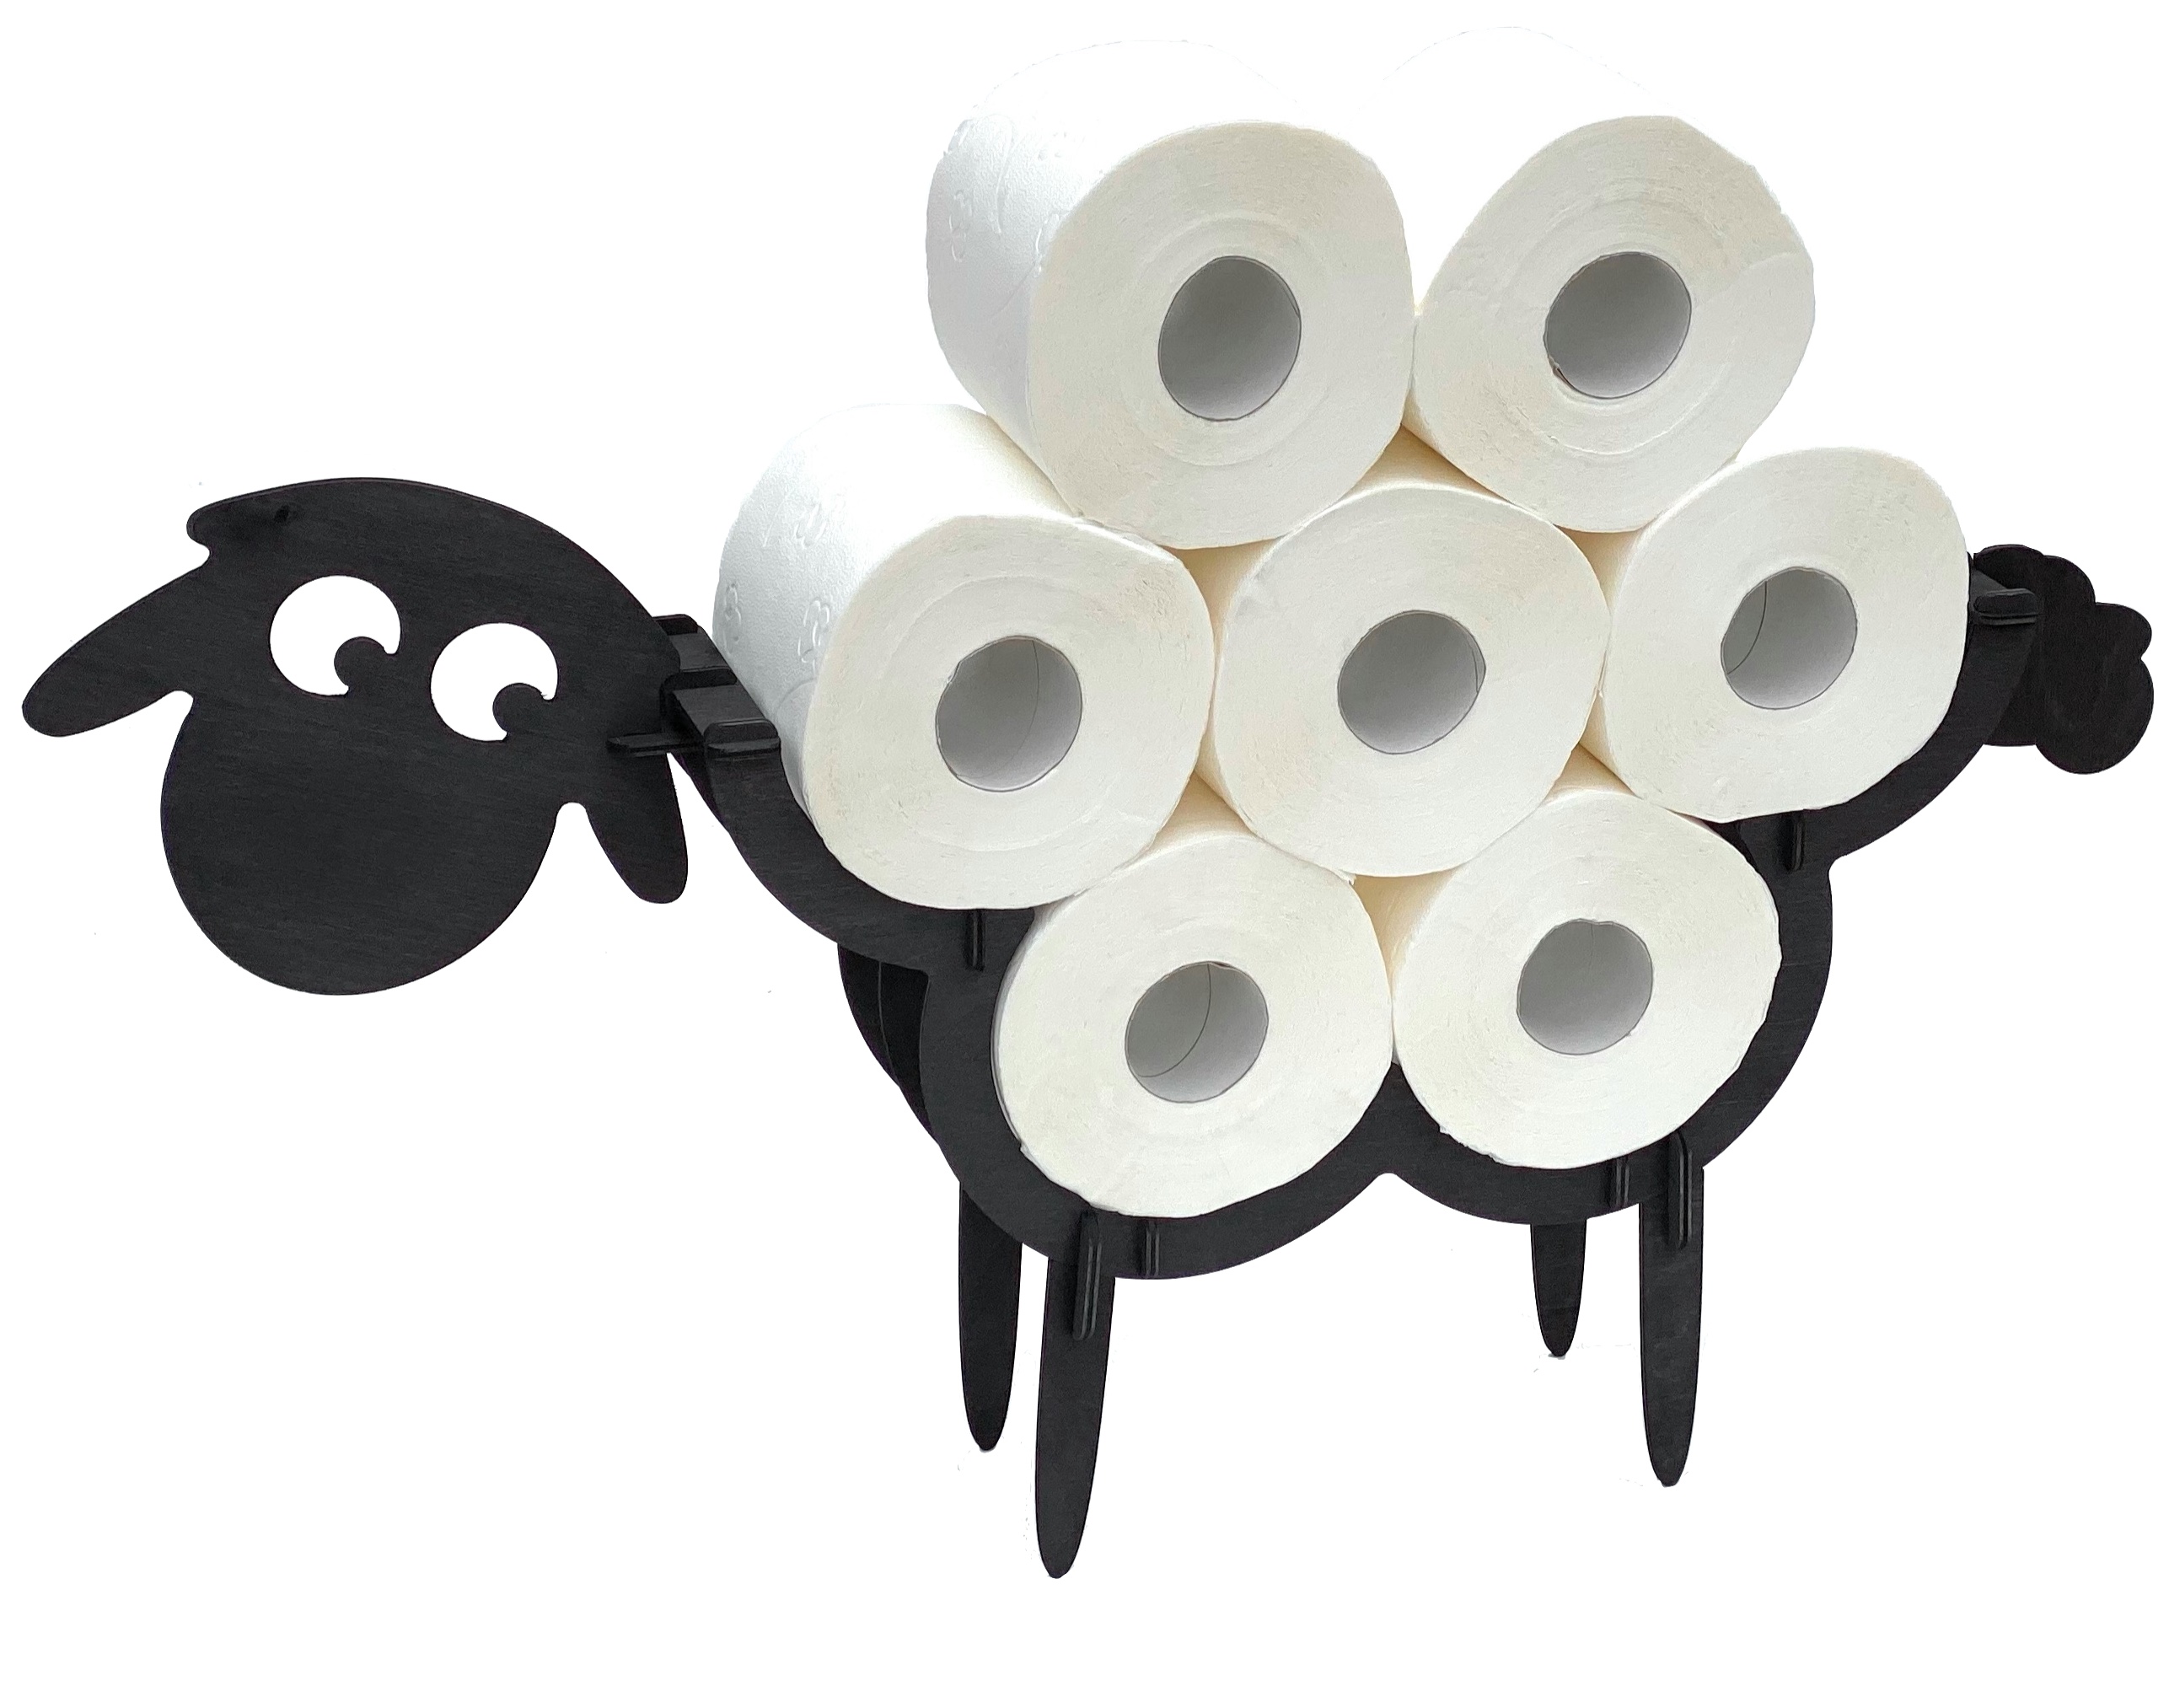 Toilettenpapierhalter stehend Papierrollenhalter WC-Rollenhalter Rollenhalter 